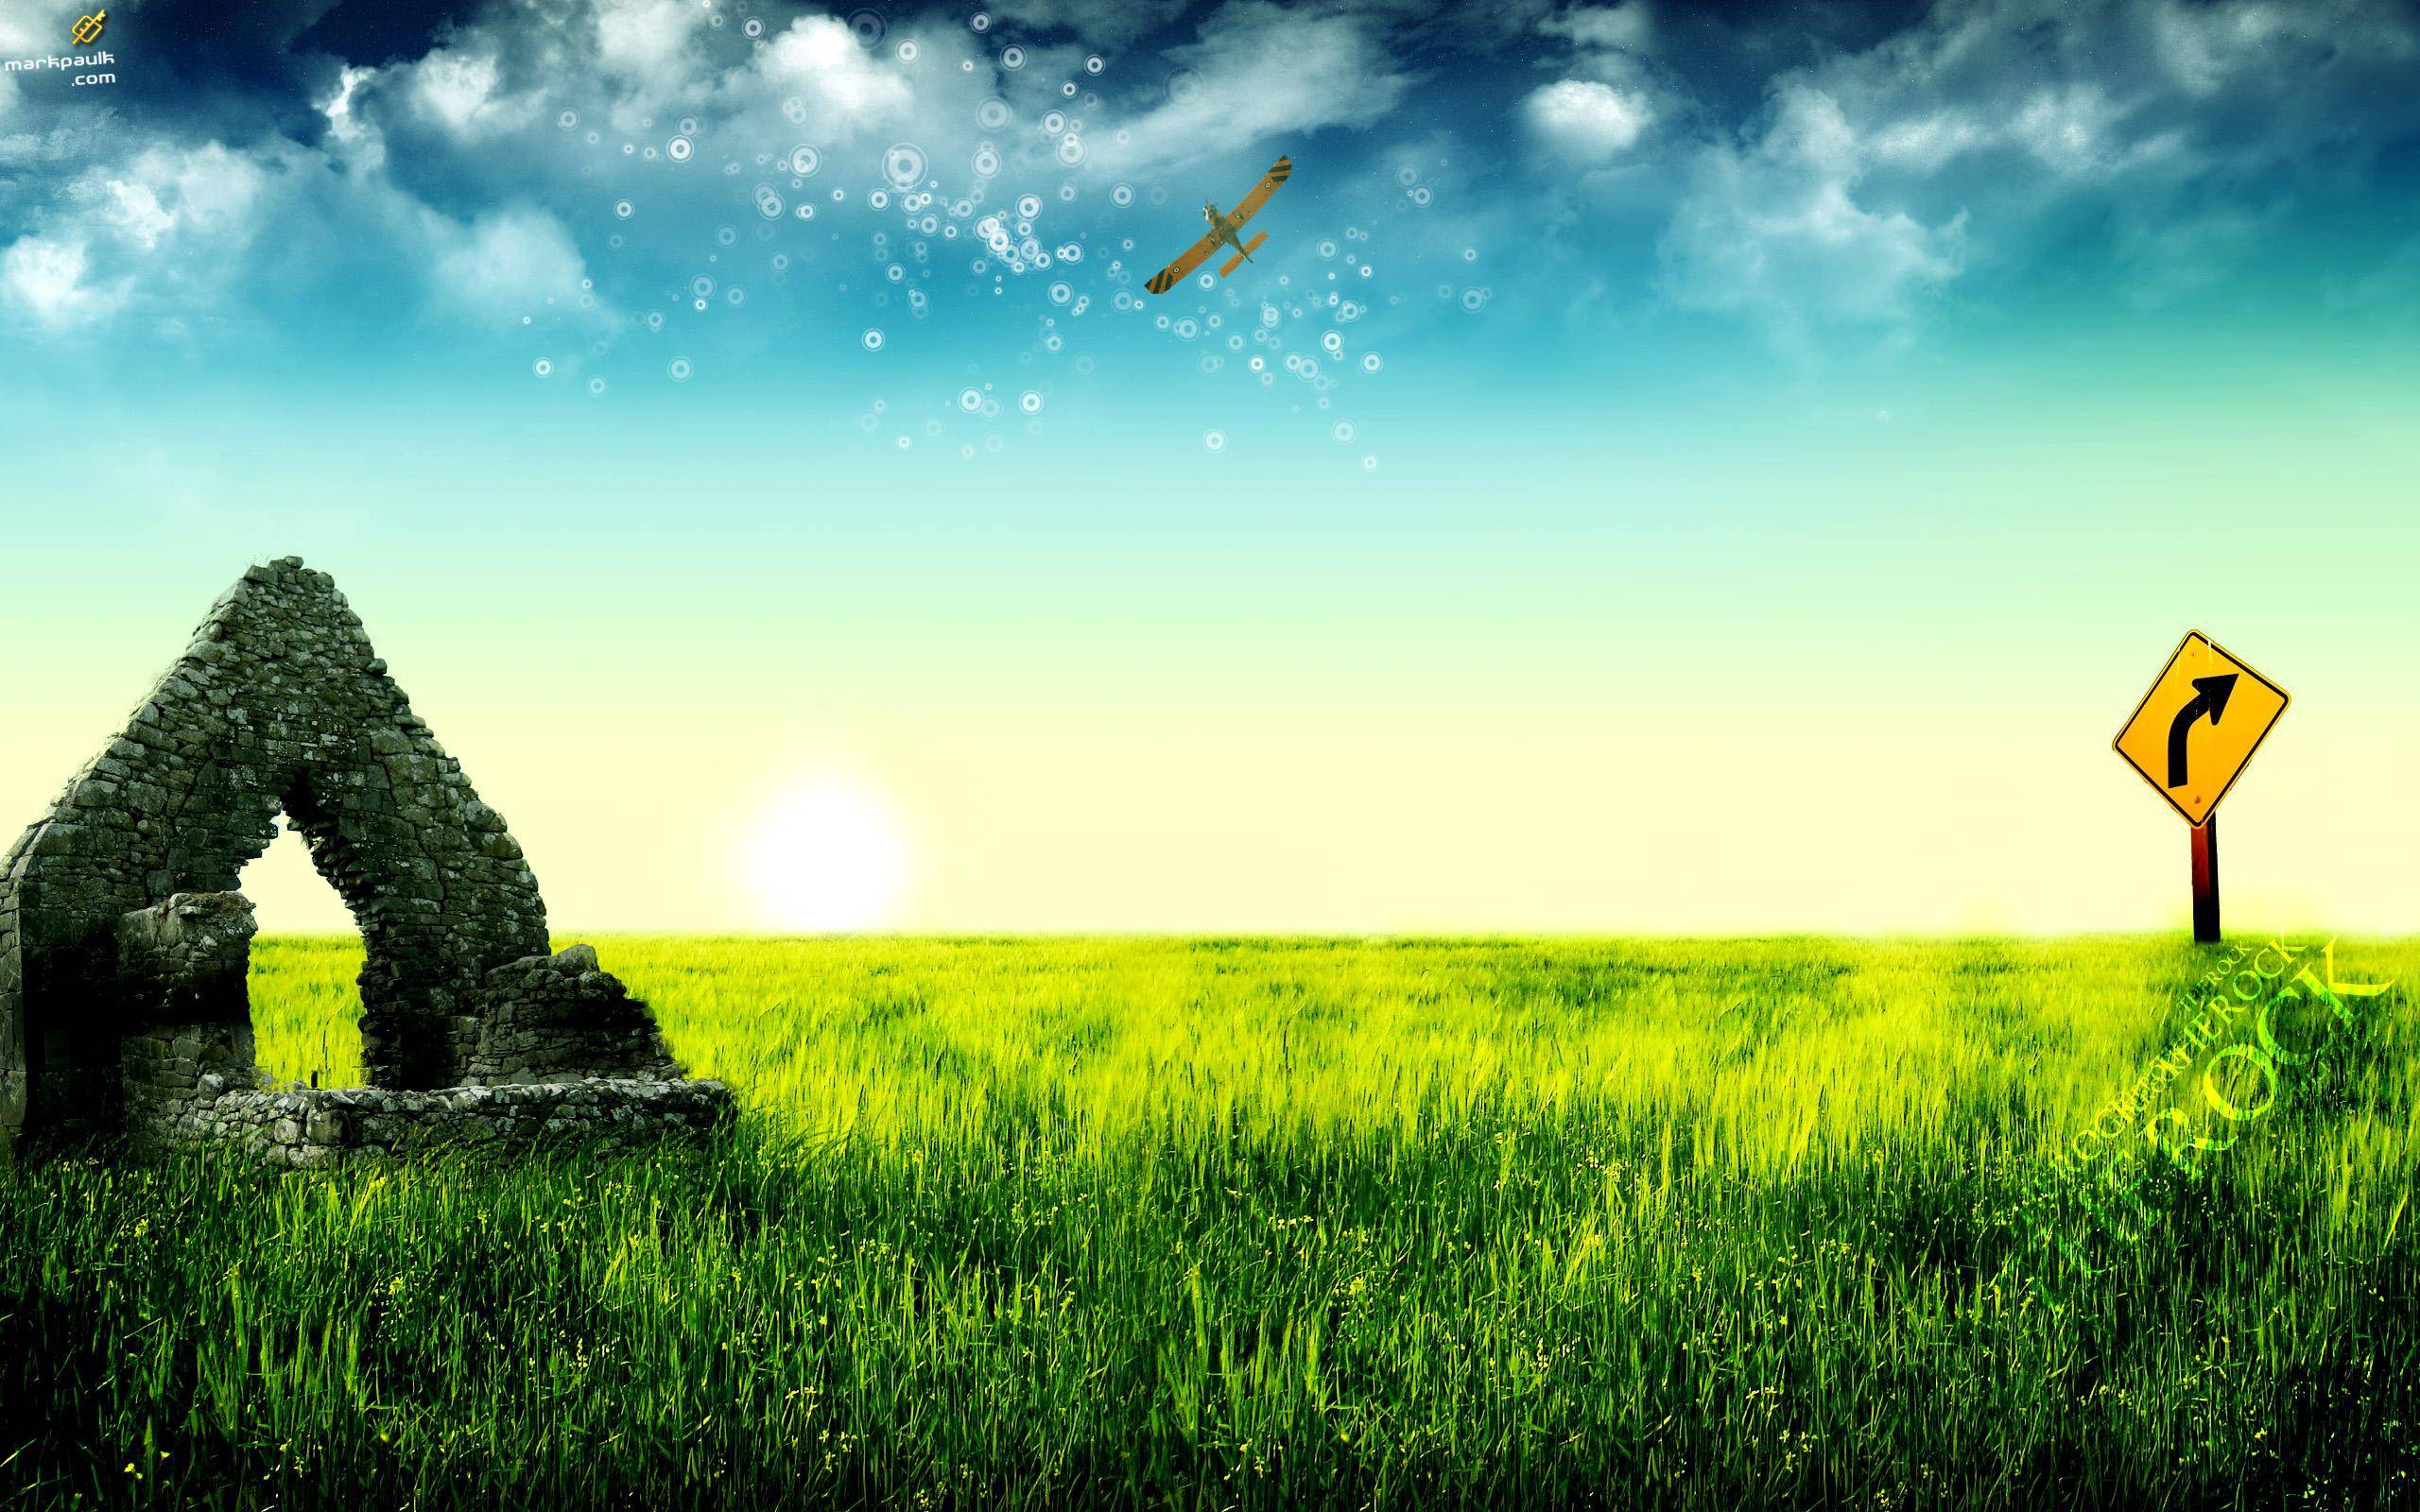 Fantasy Grassland background in 2560x1600 resolution. HD